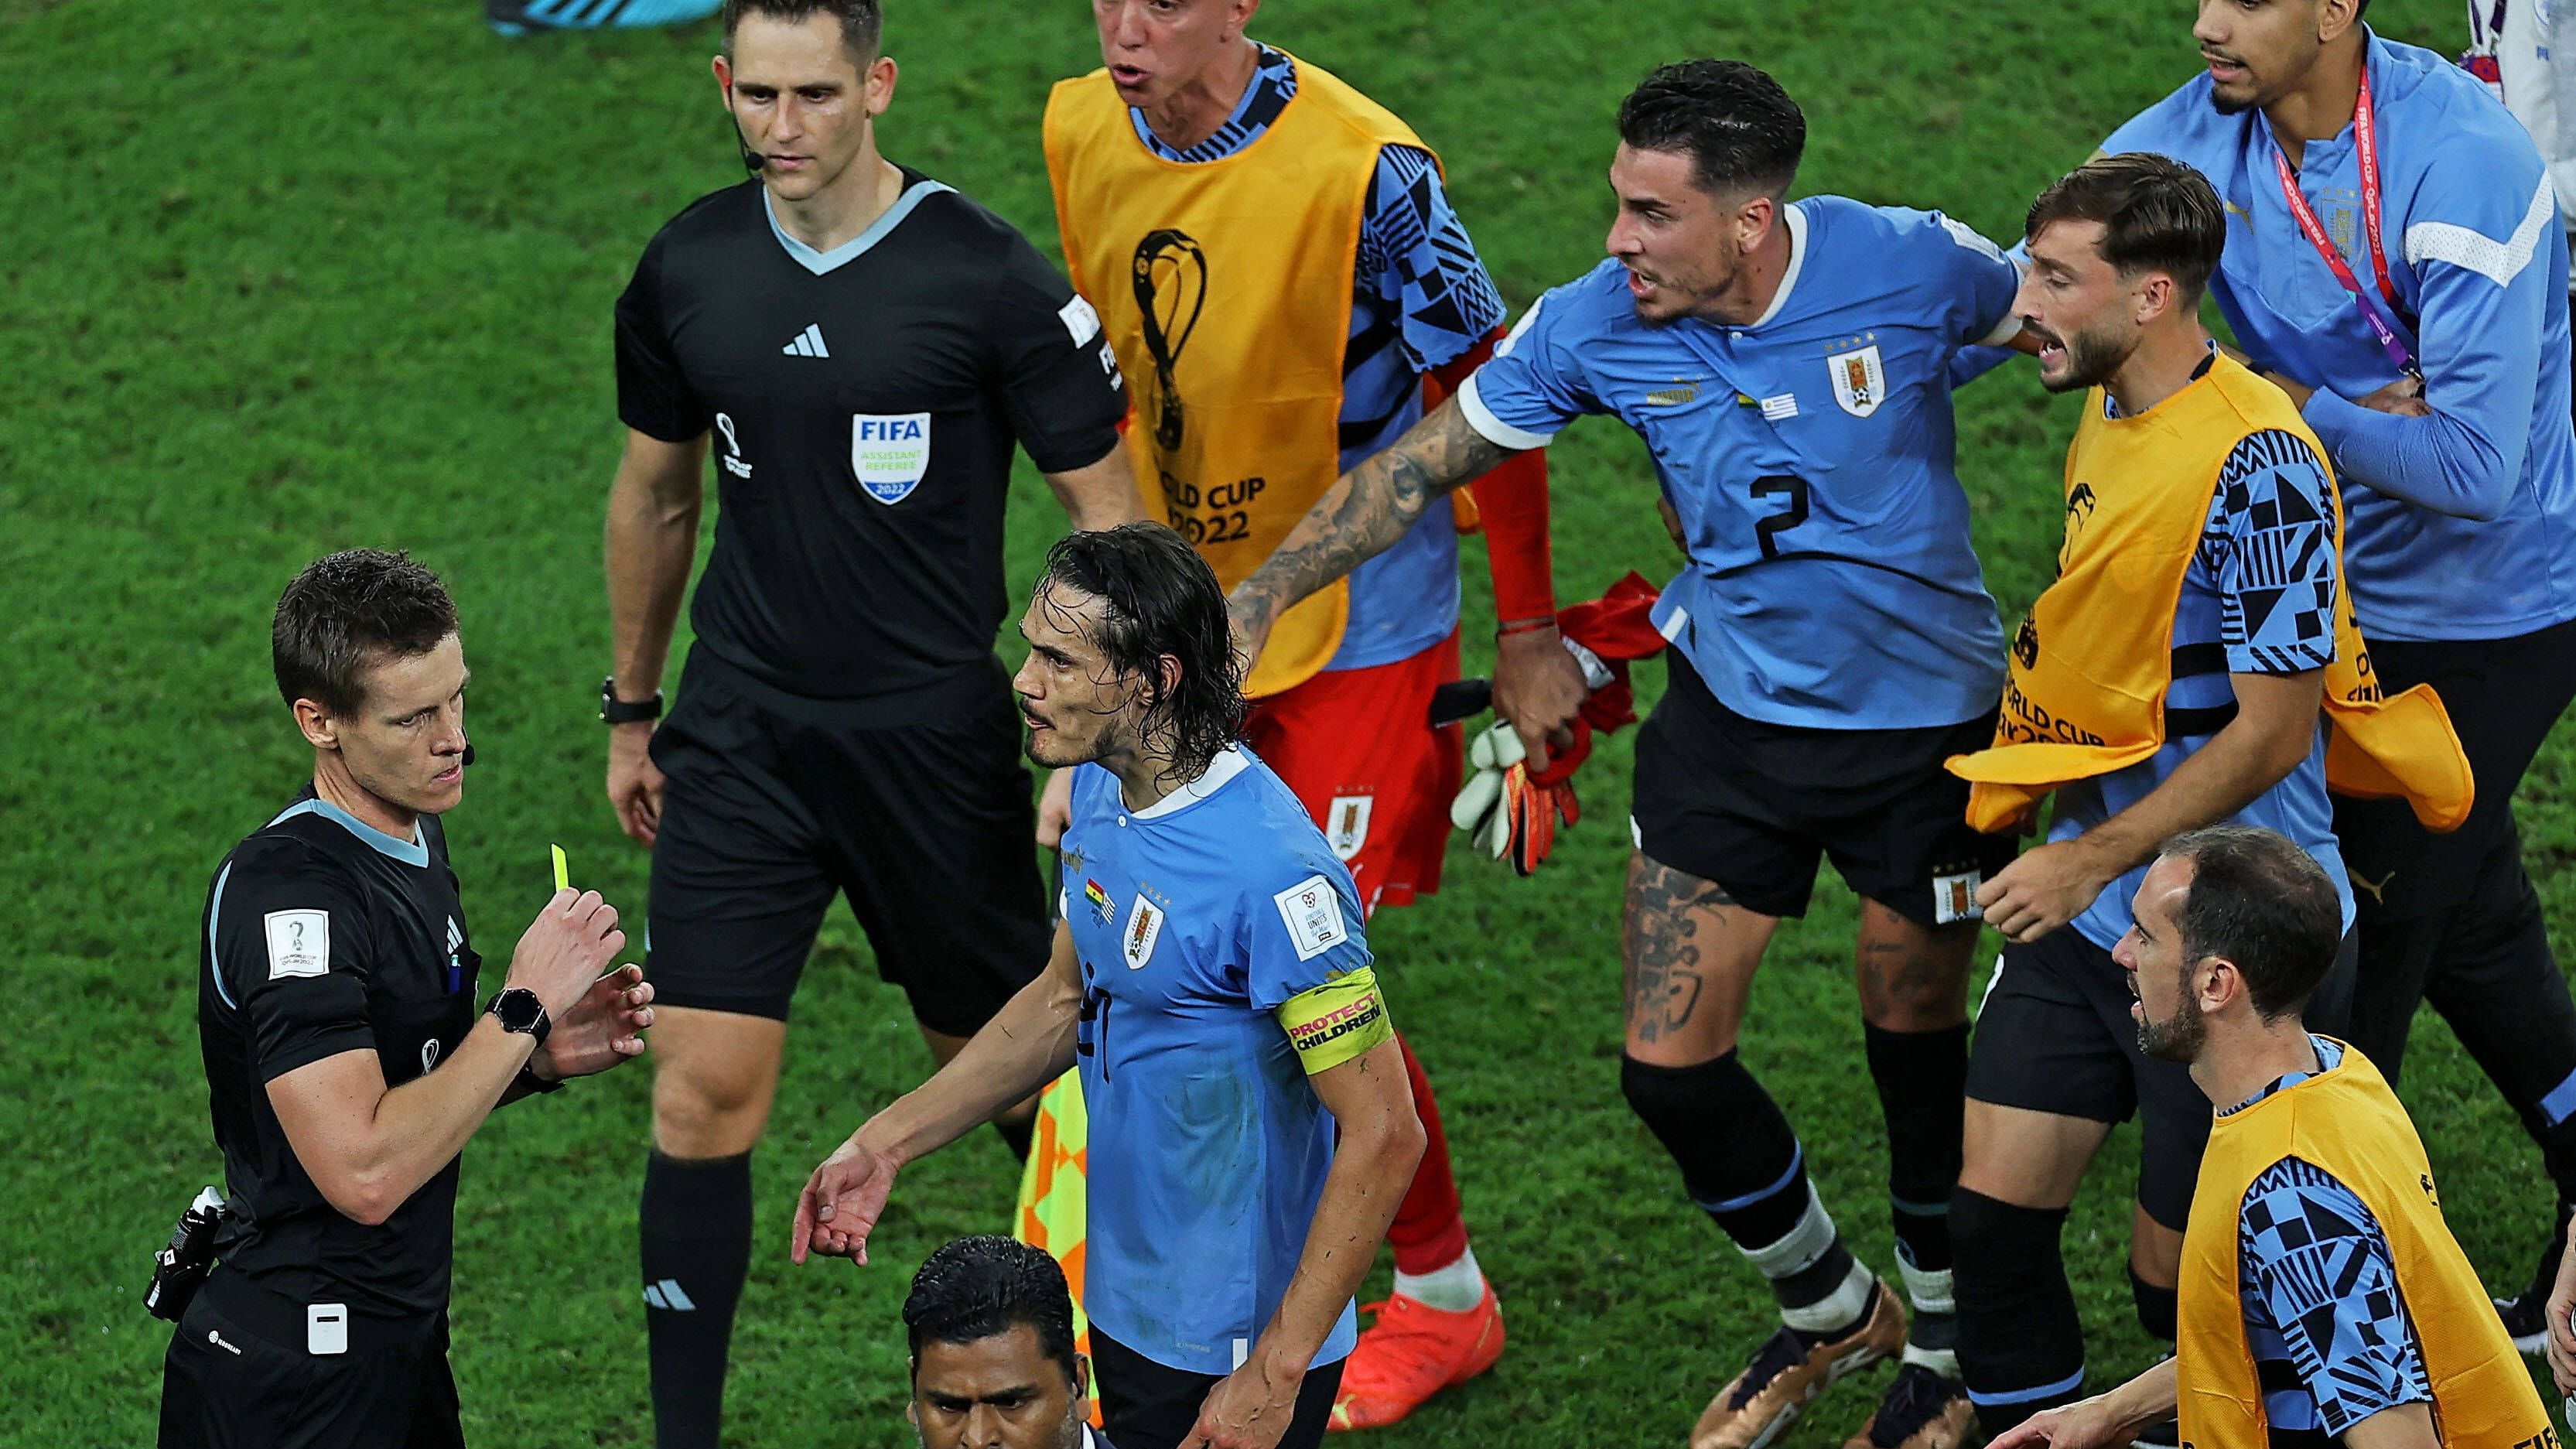 Skandal bei der WM: Fifa sperrt vier uruguayische Spieler nach Attacken auf deutschen Schiri Siebert